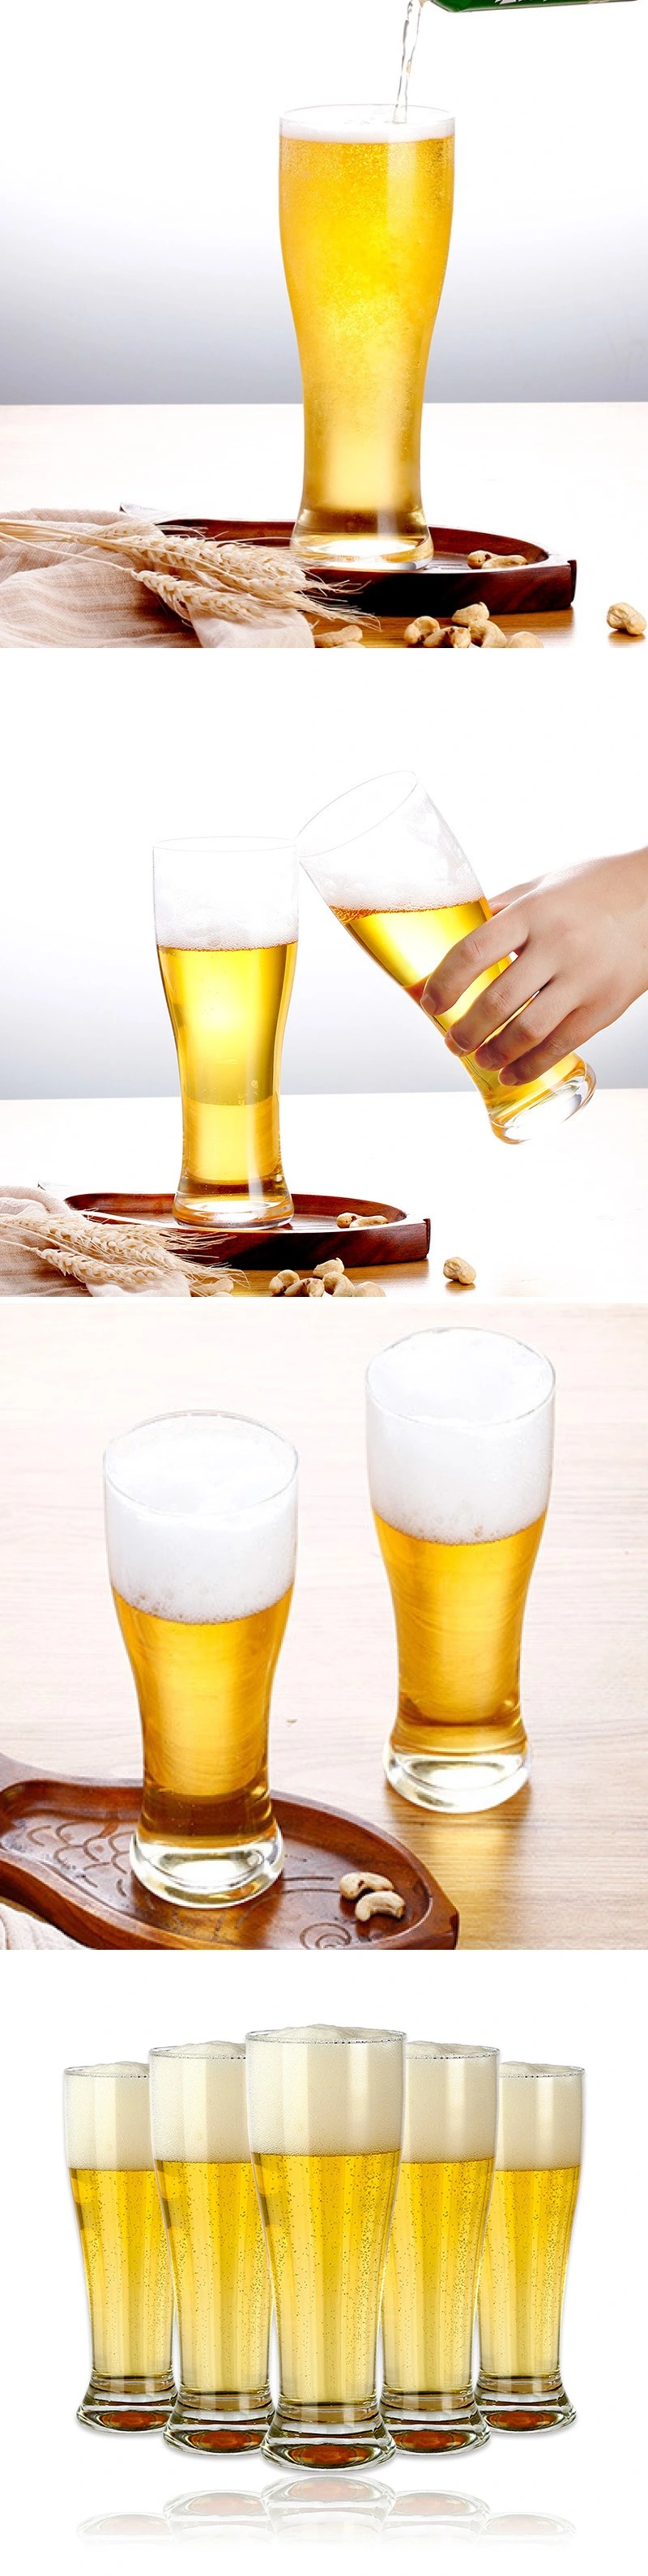 520ml Pilsner Glass Beer Cup/Beer Steins/Beer Mug